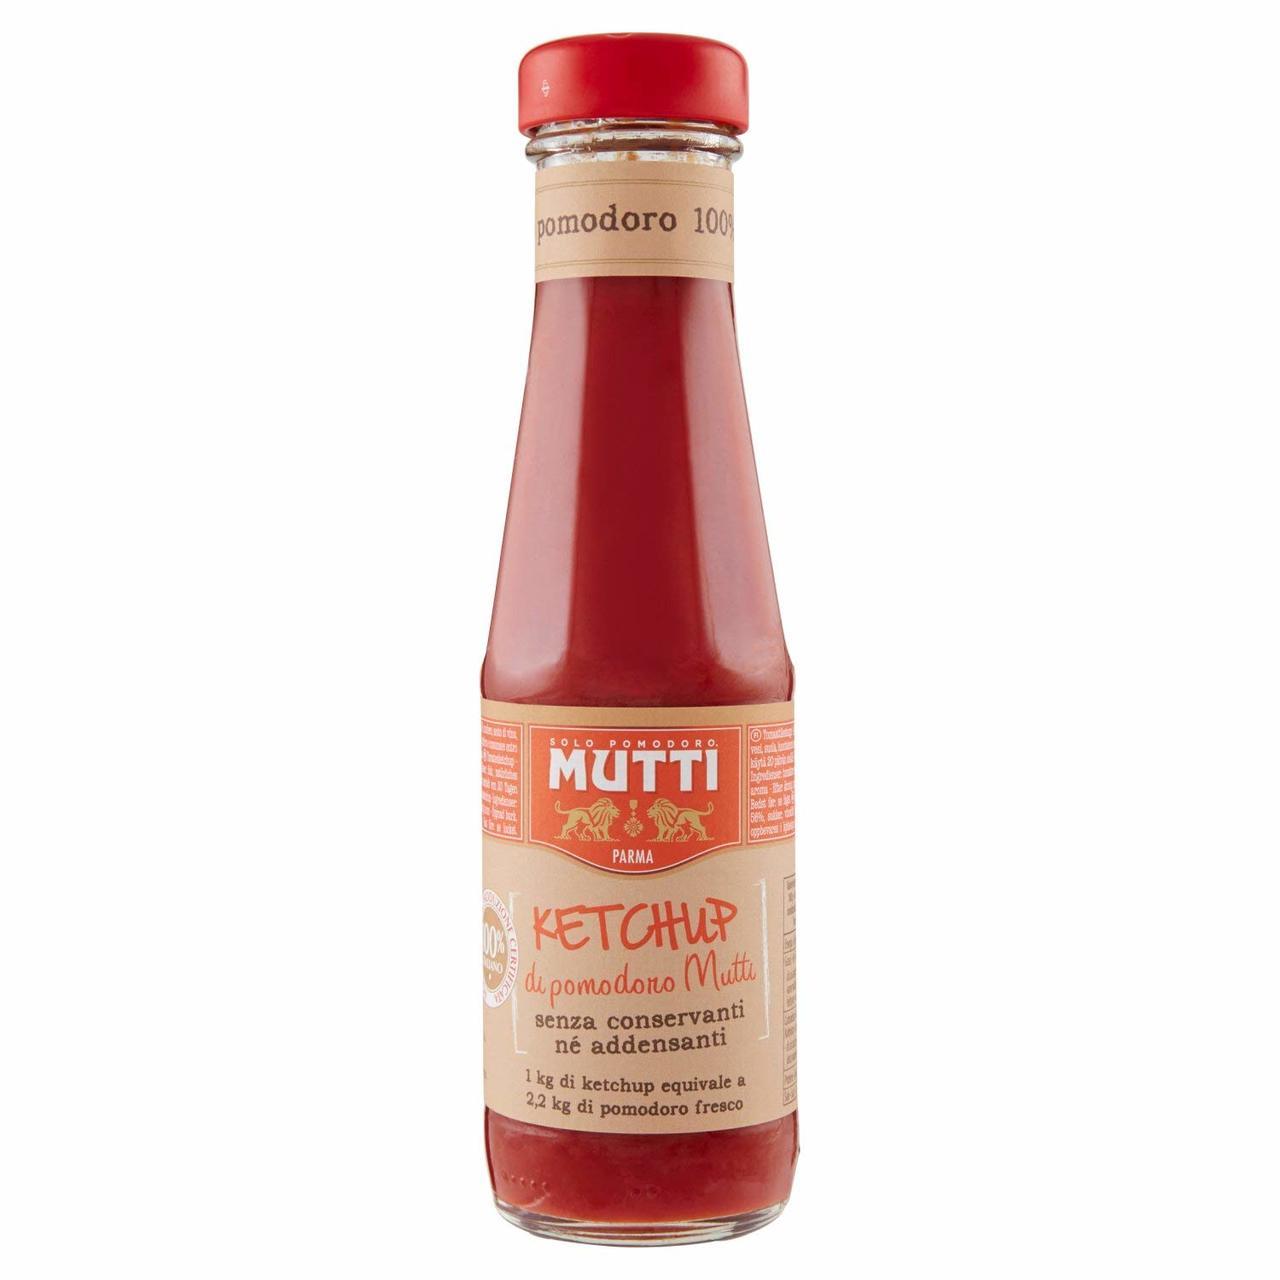 Mutti Ketchup Di Pomodoro Mutti, 12 oz (Pack of 3) - Walmart.com ...